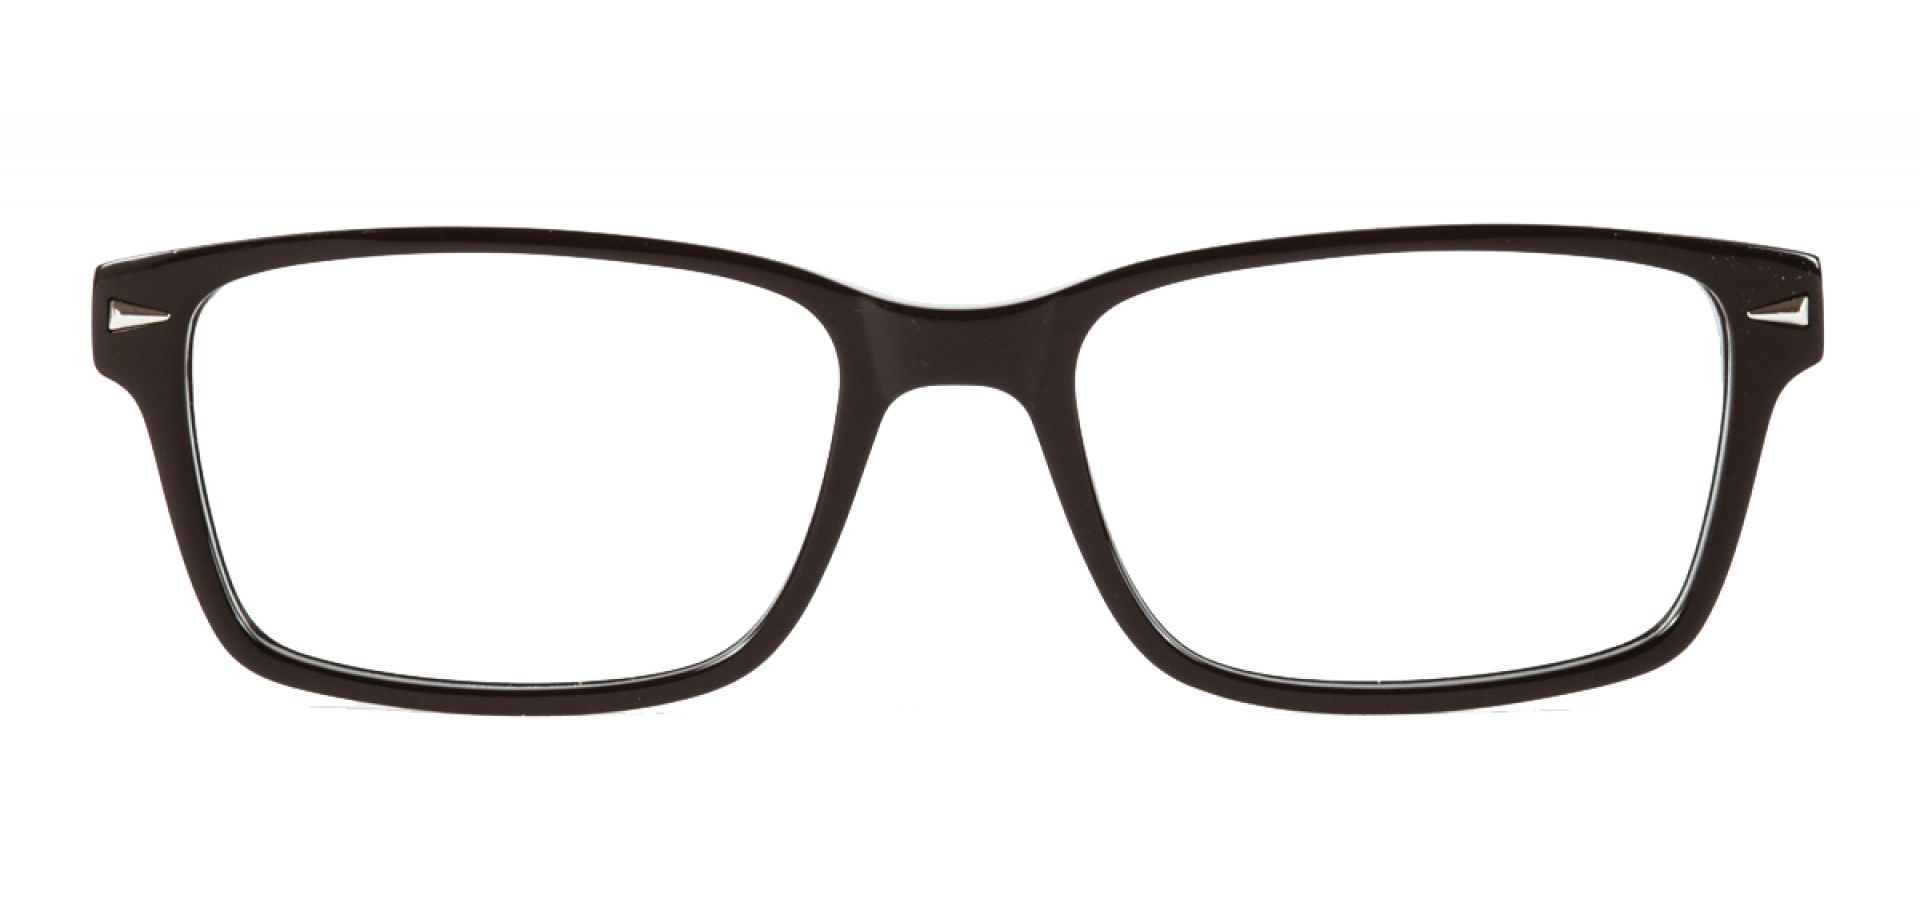 Dioptrijske naočale Ghetaldus GHK106: Boja: Black, Veličina: 47/16/132, Spol: dječje, Materijal: acetat